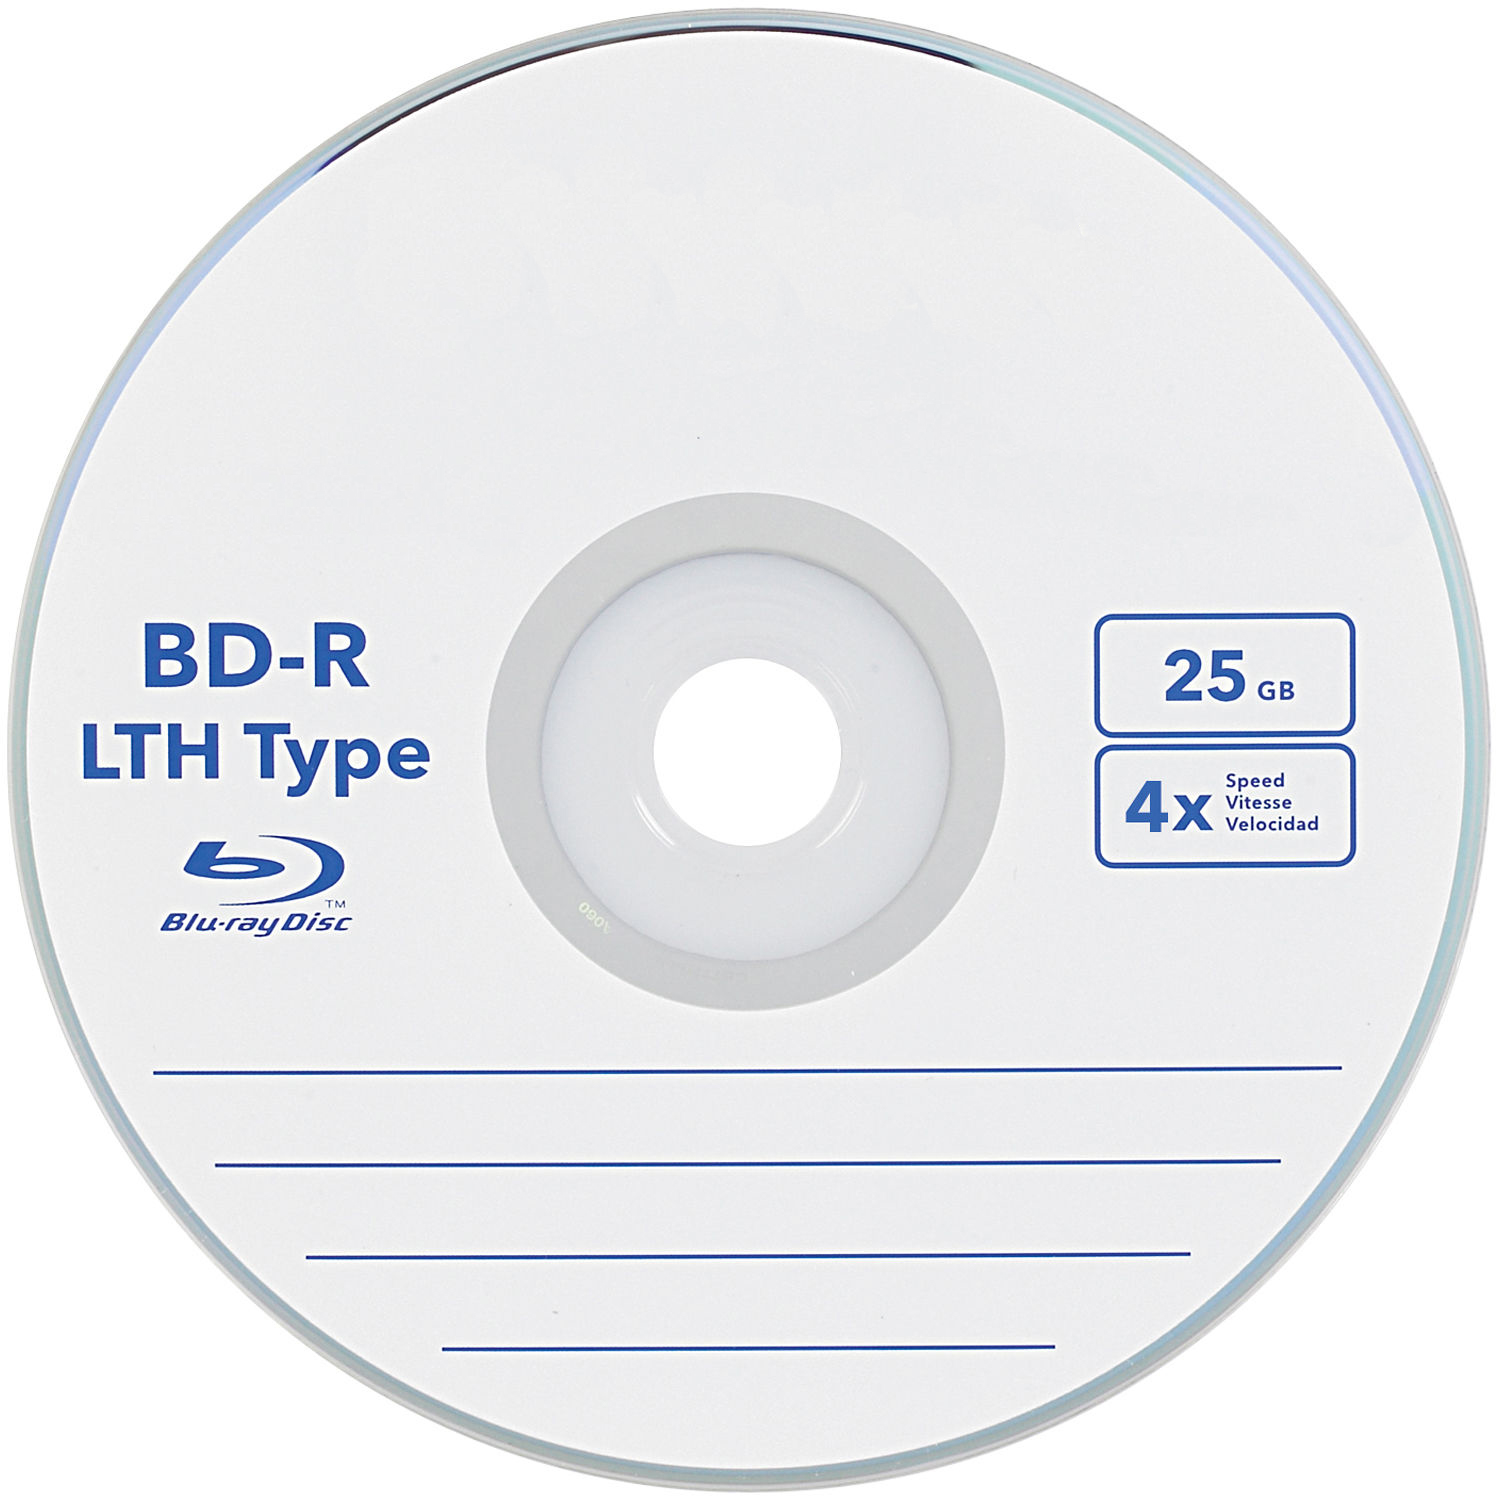 Dossier : le disque BD-R LTH en détails